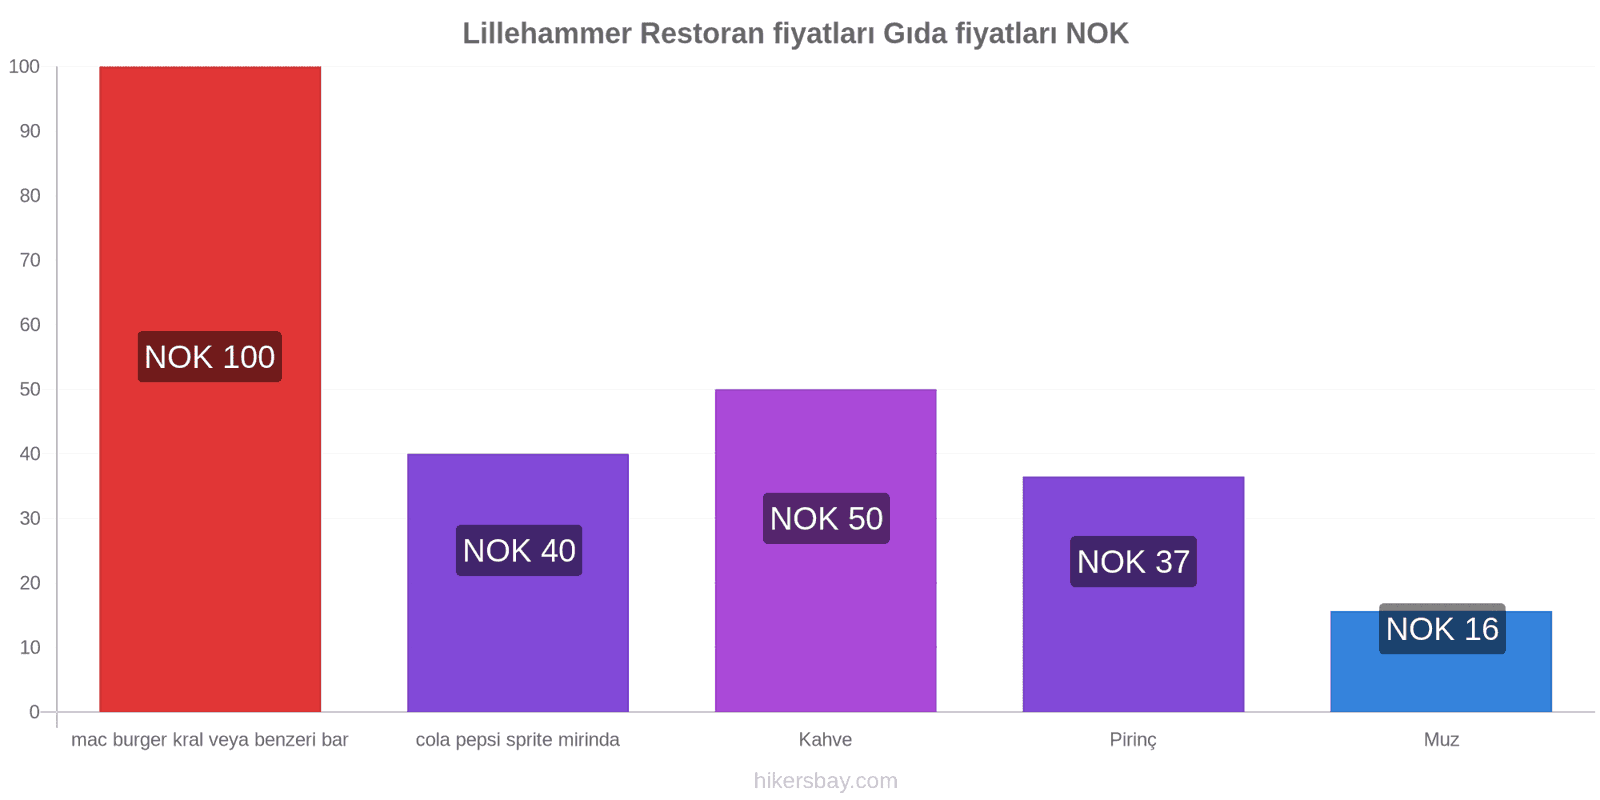 Lillehammer fiyat değişiklikleri hikersbay.com